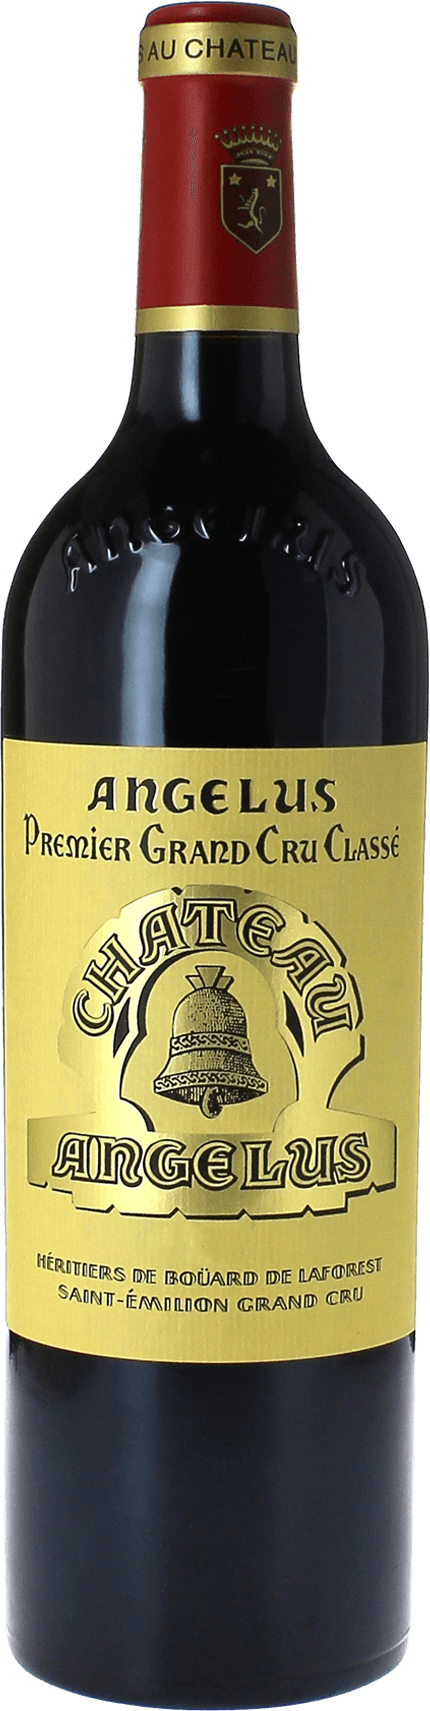 Angelus 2018 1er Grand cru class A Saint-Emilion, Bordeaux rouge